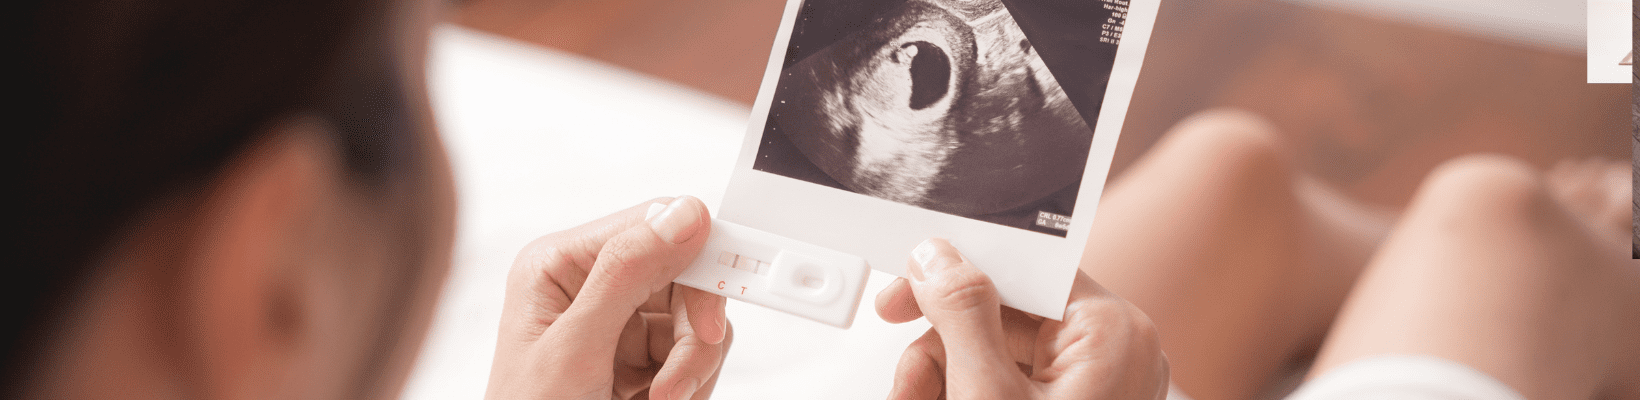 Pierwsza wizyta w ciąży u ginekologa. Kiedy się zgłosić?